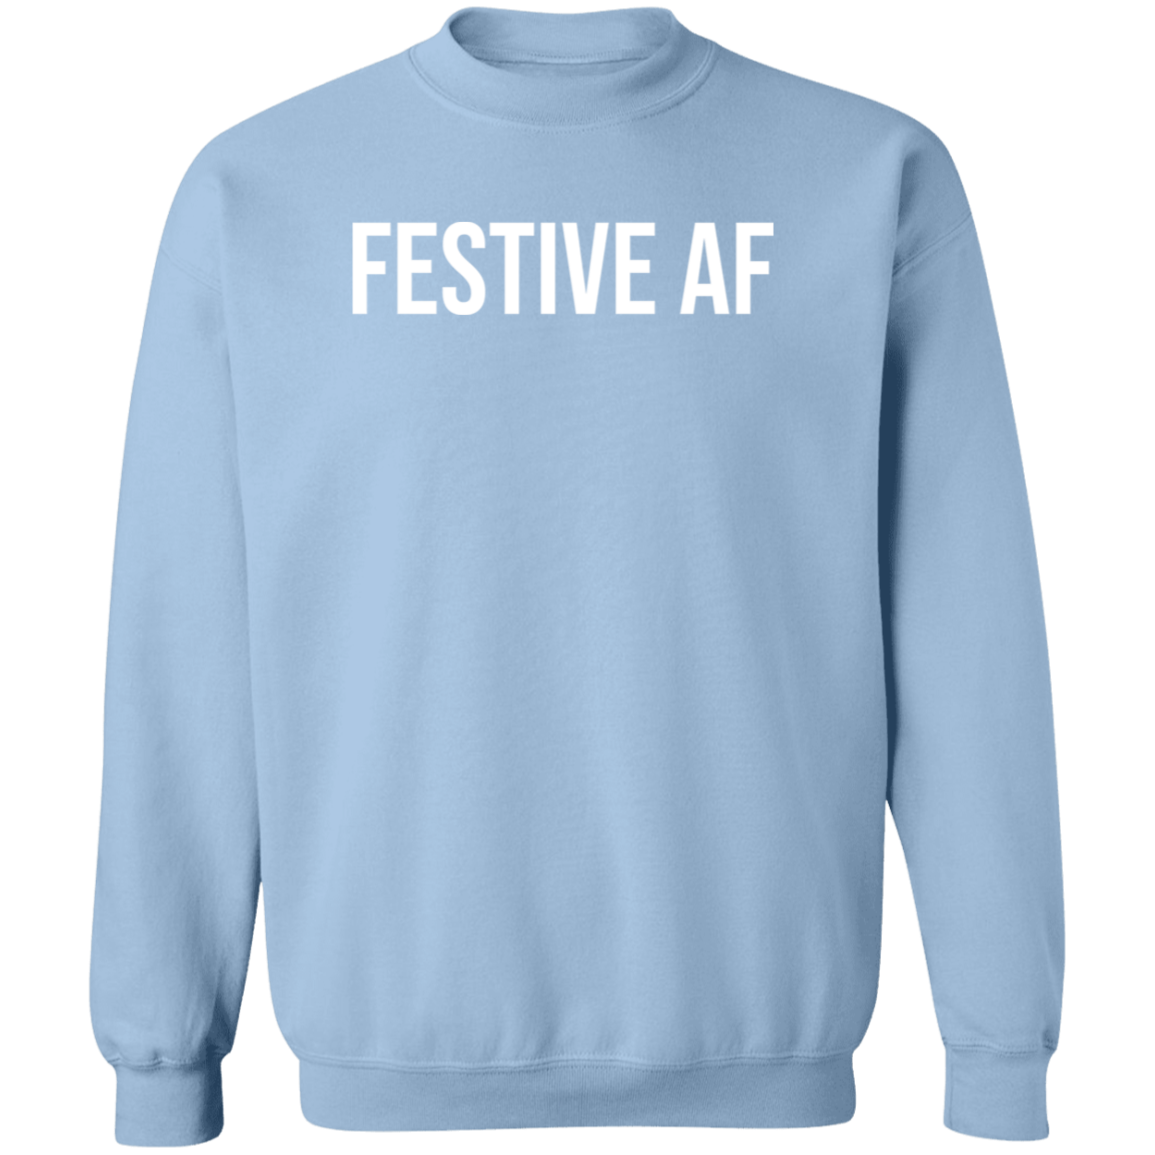 Festive AF Sweatshirt